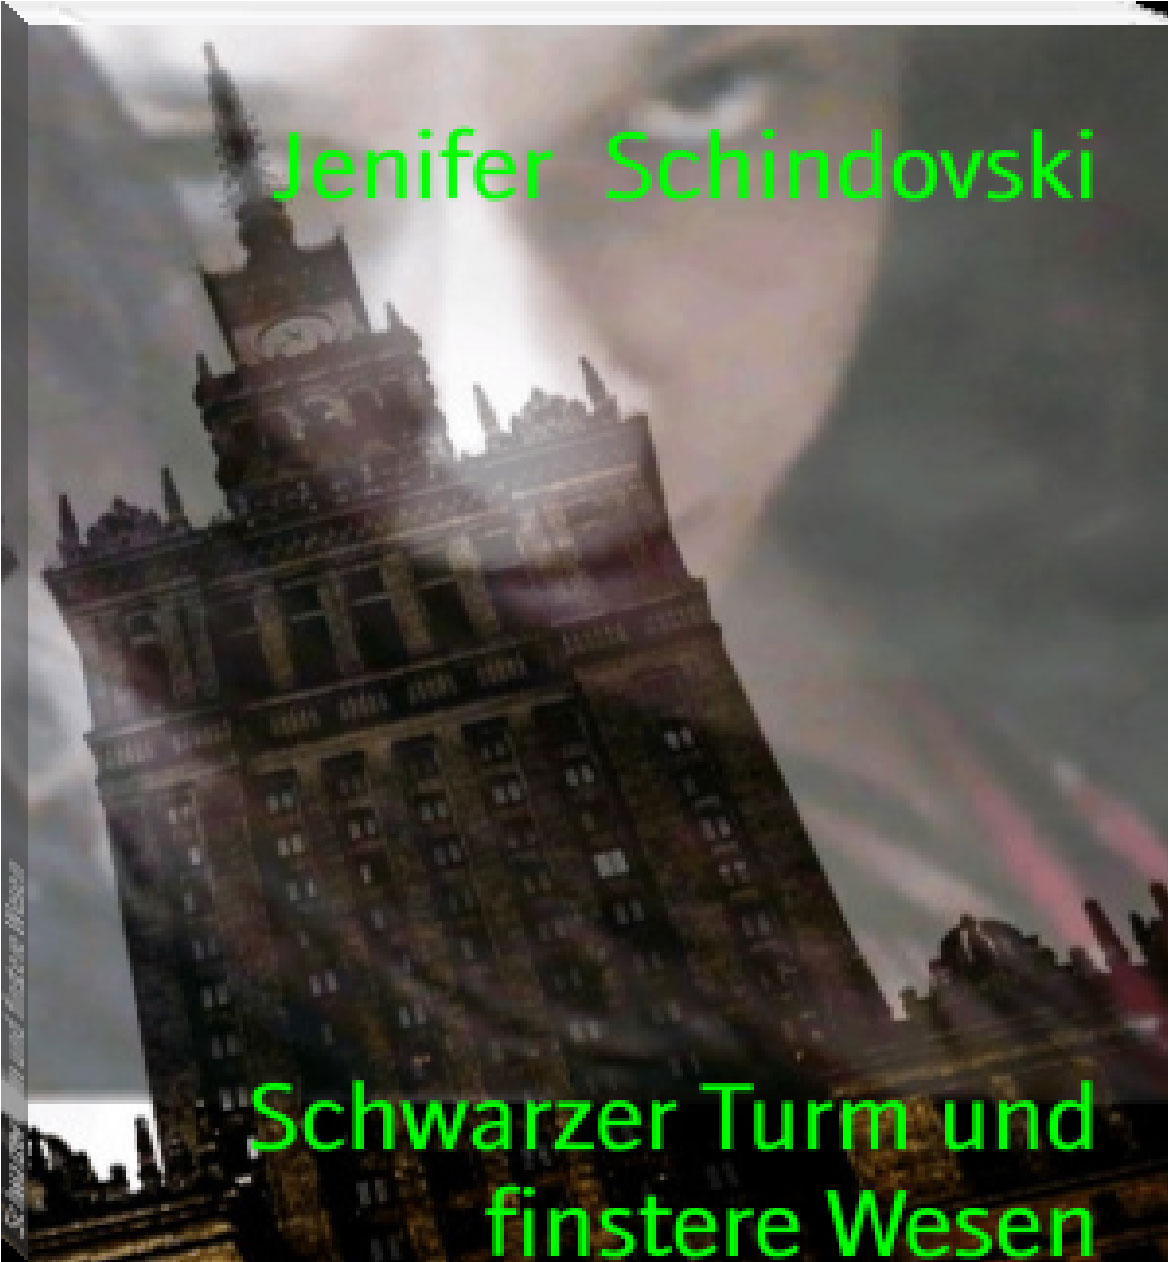 Schwarzer Turm und finstere Wesen rendition image